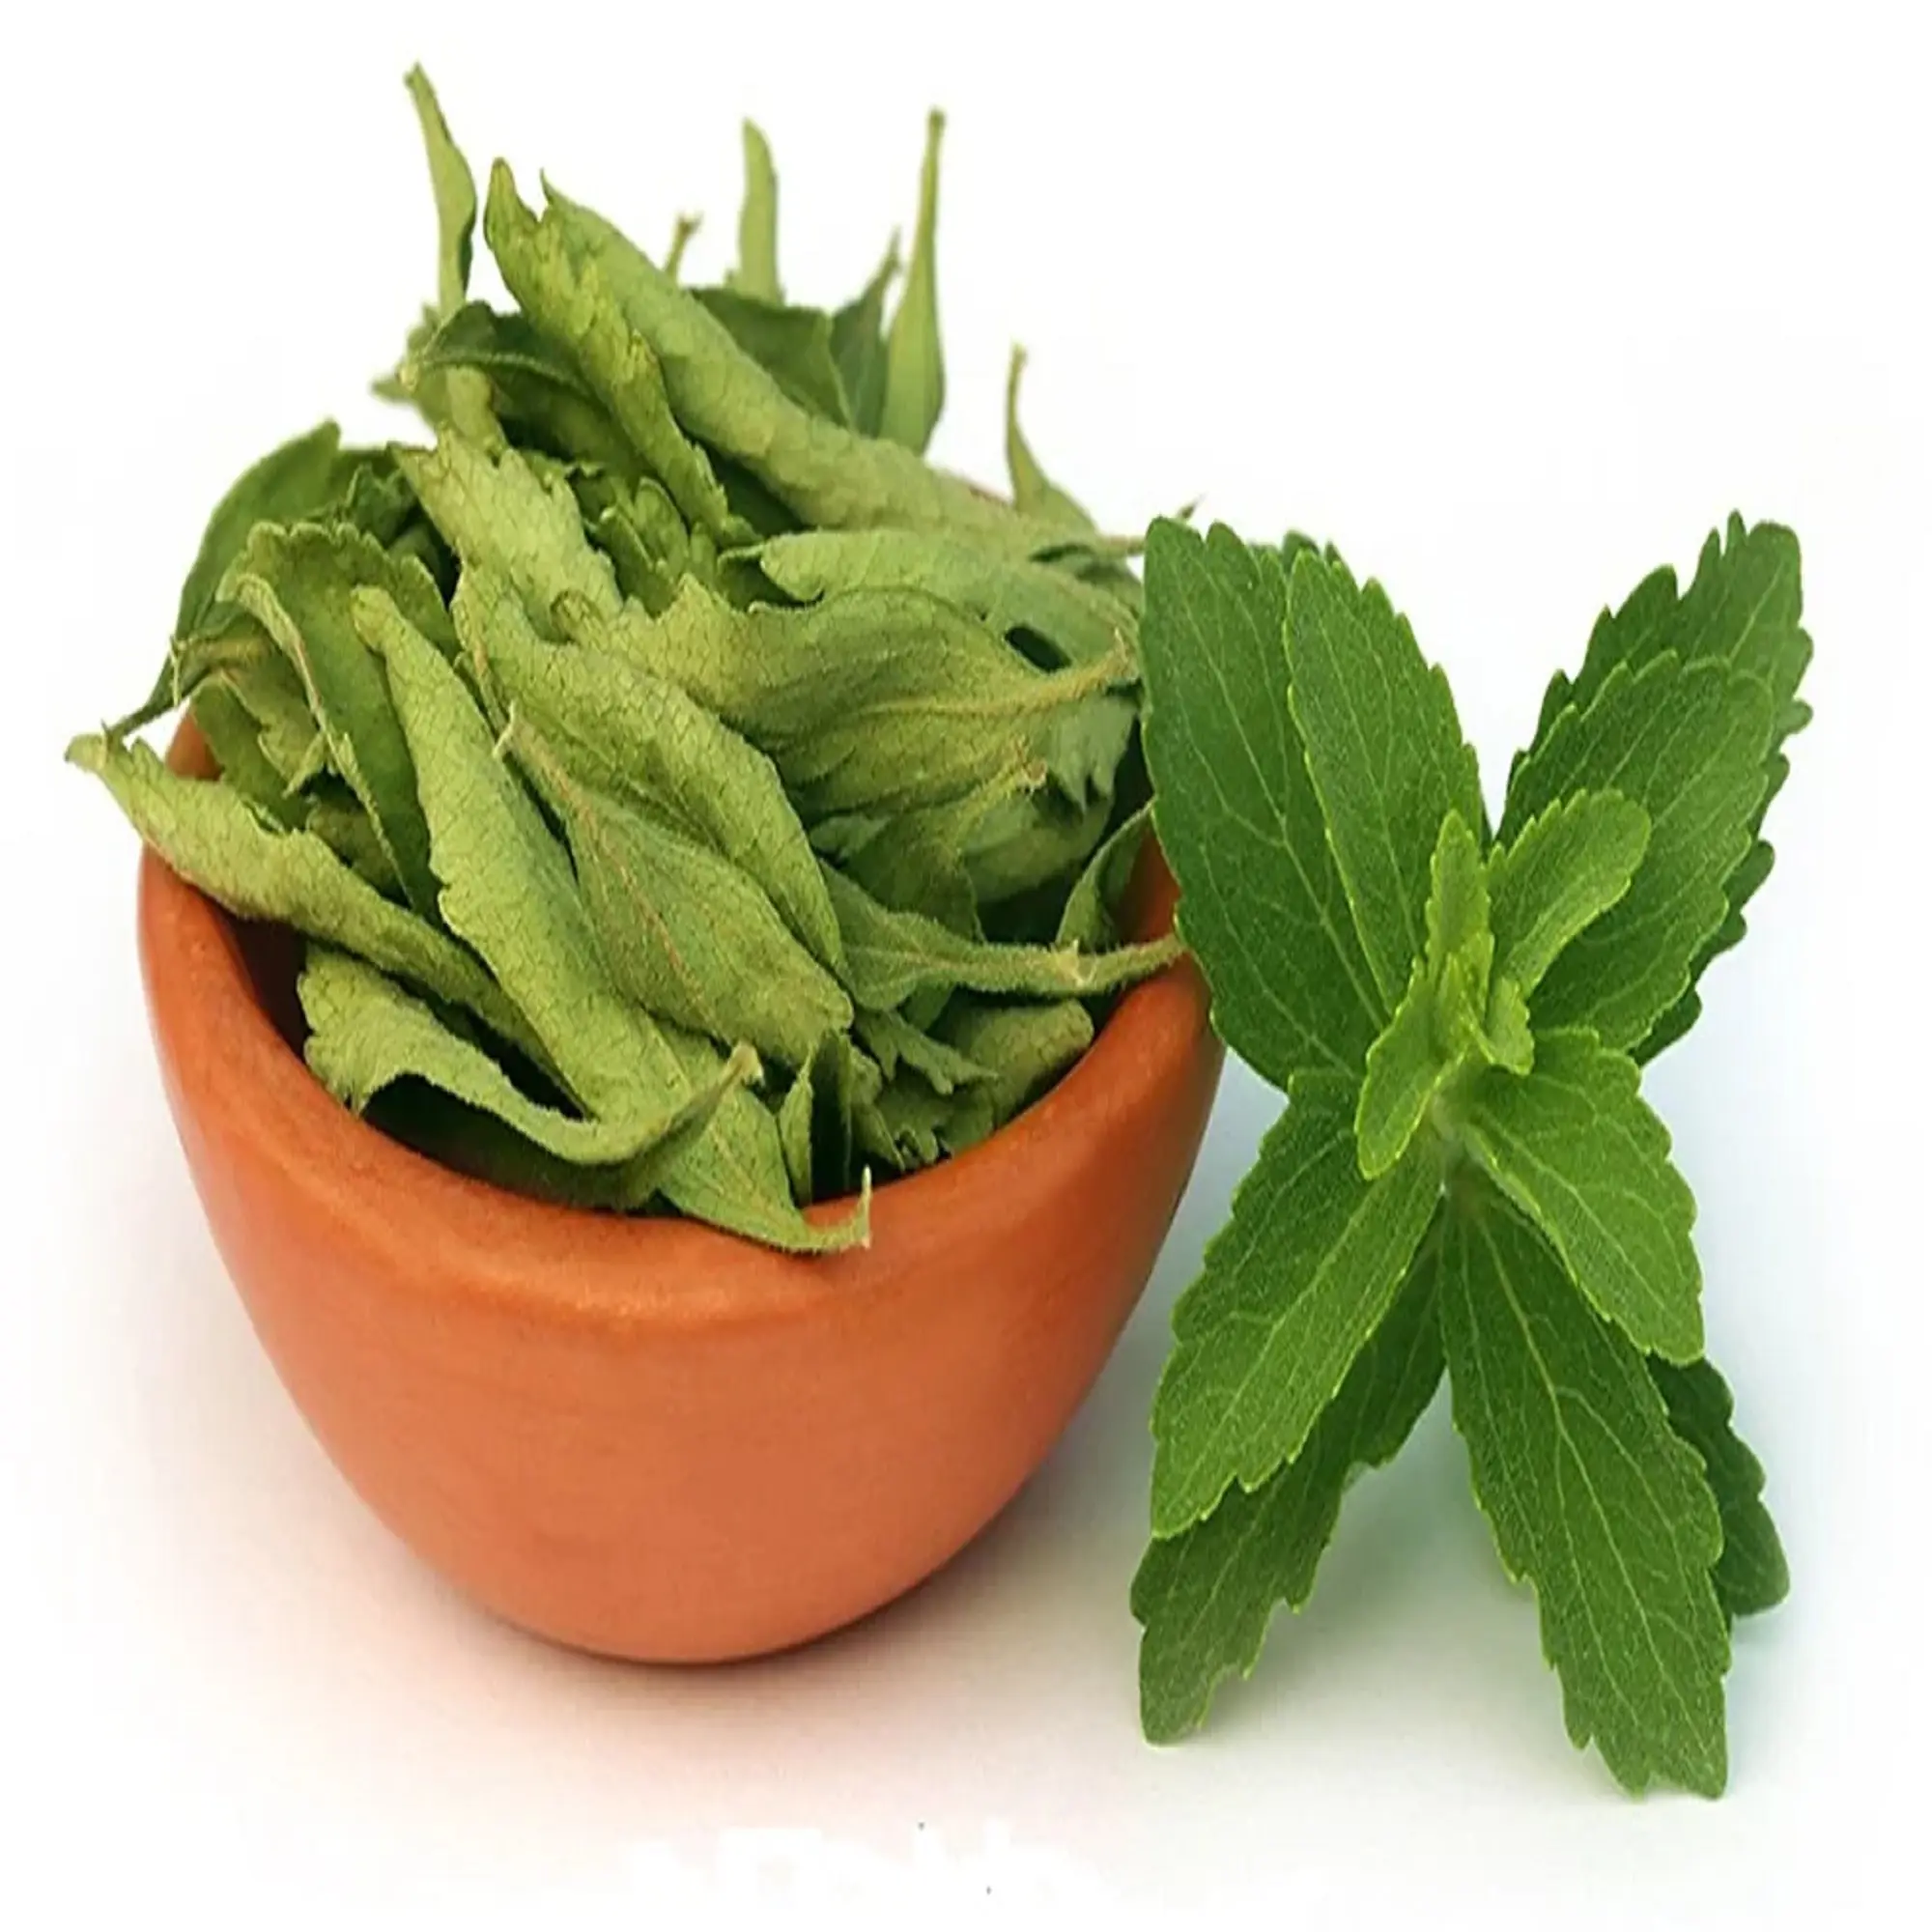 Gran cantidad al por mayor de té de hierbas secas Stevia Rebaudiana hoja hierba china para la venta por exportador indio con etiquetado privado